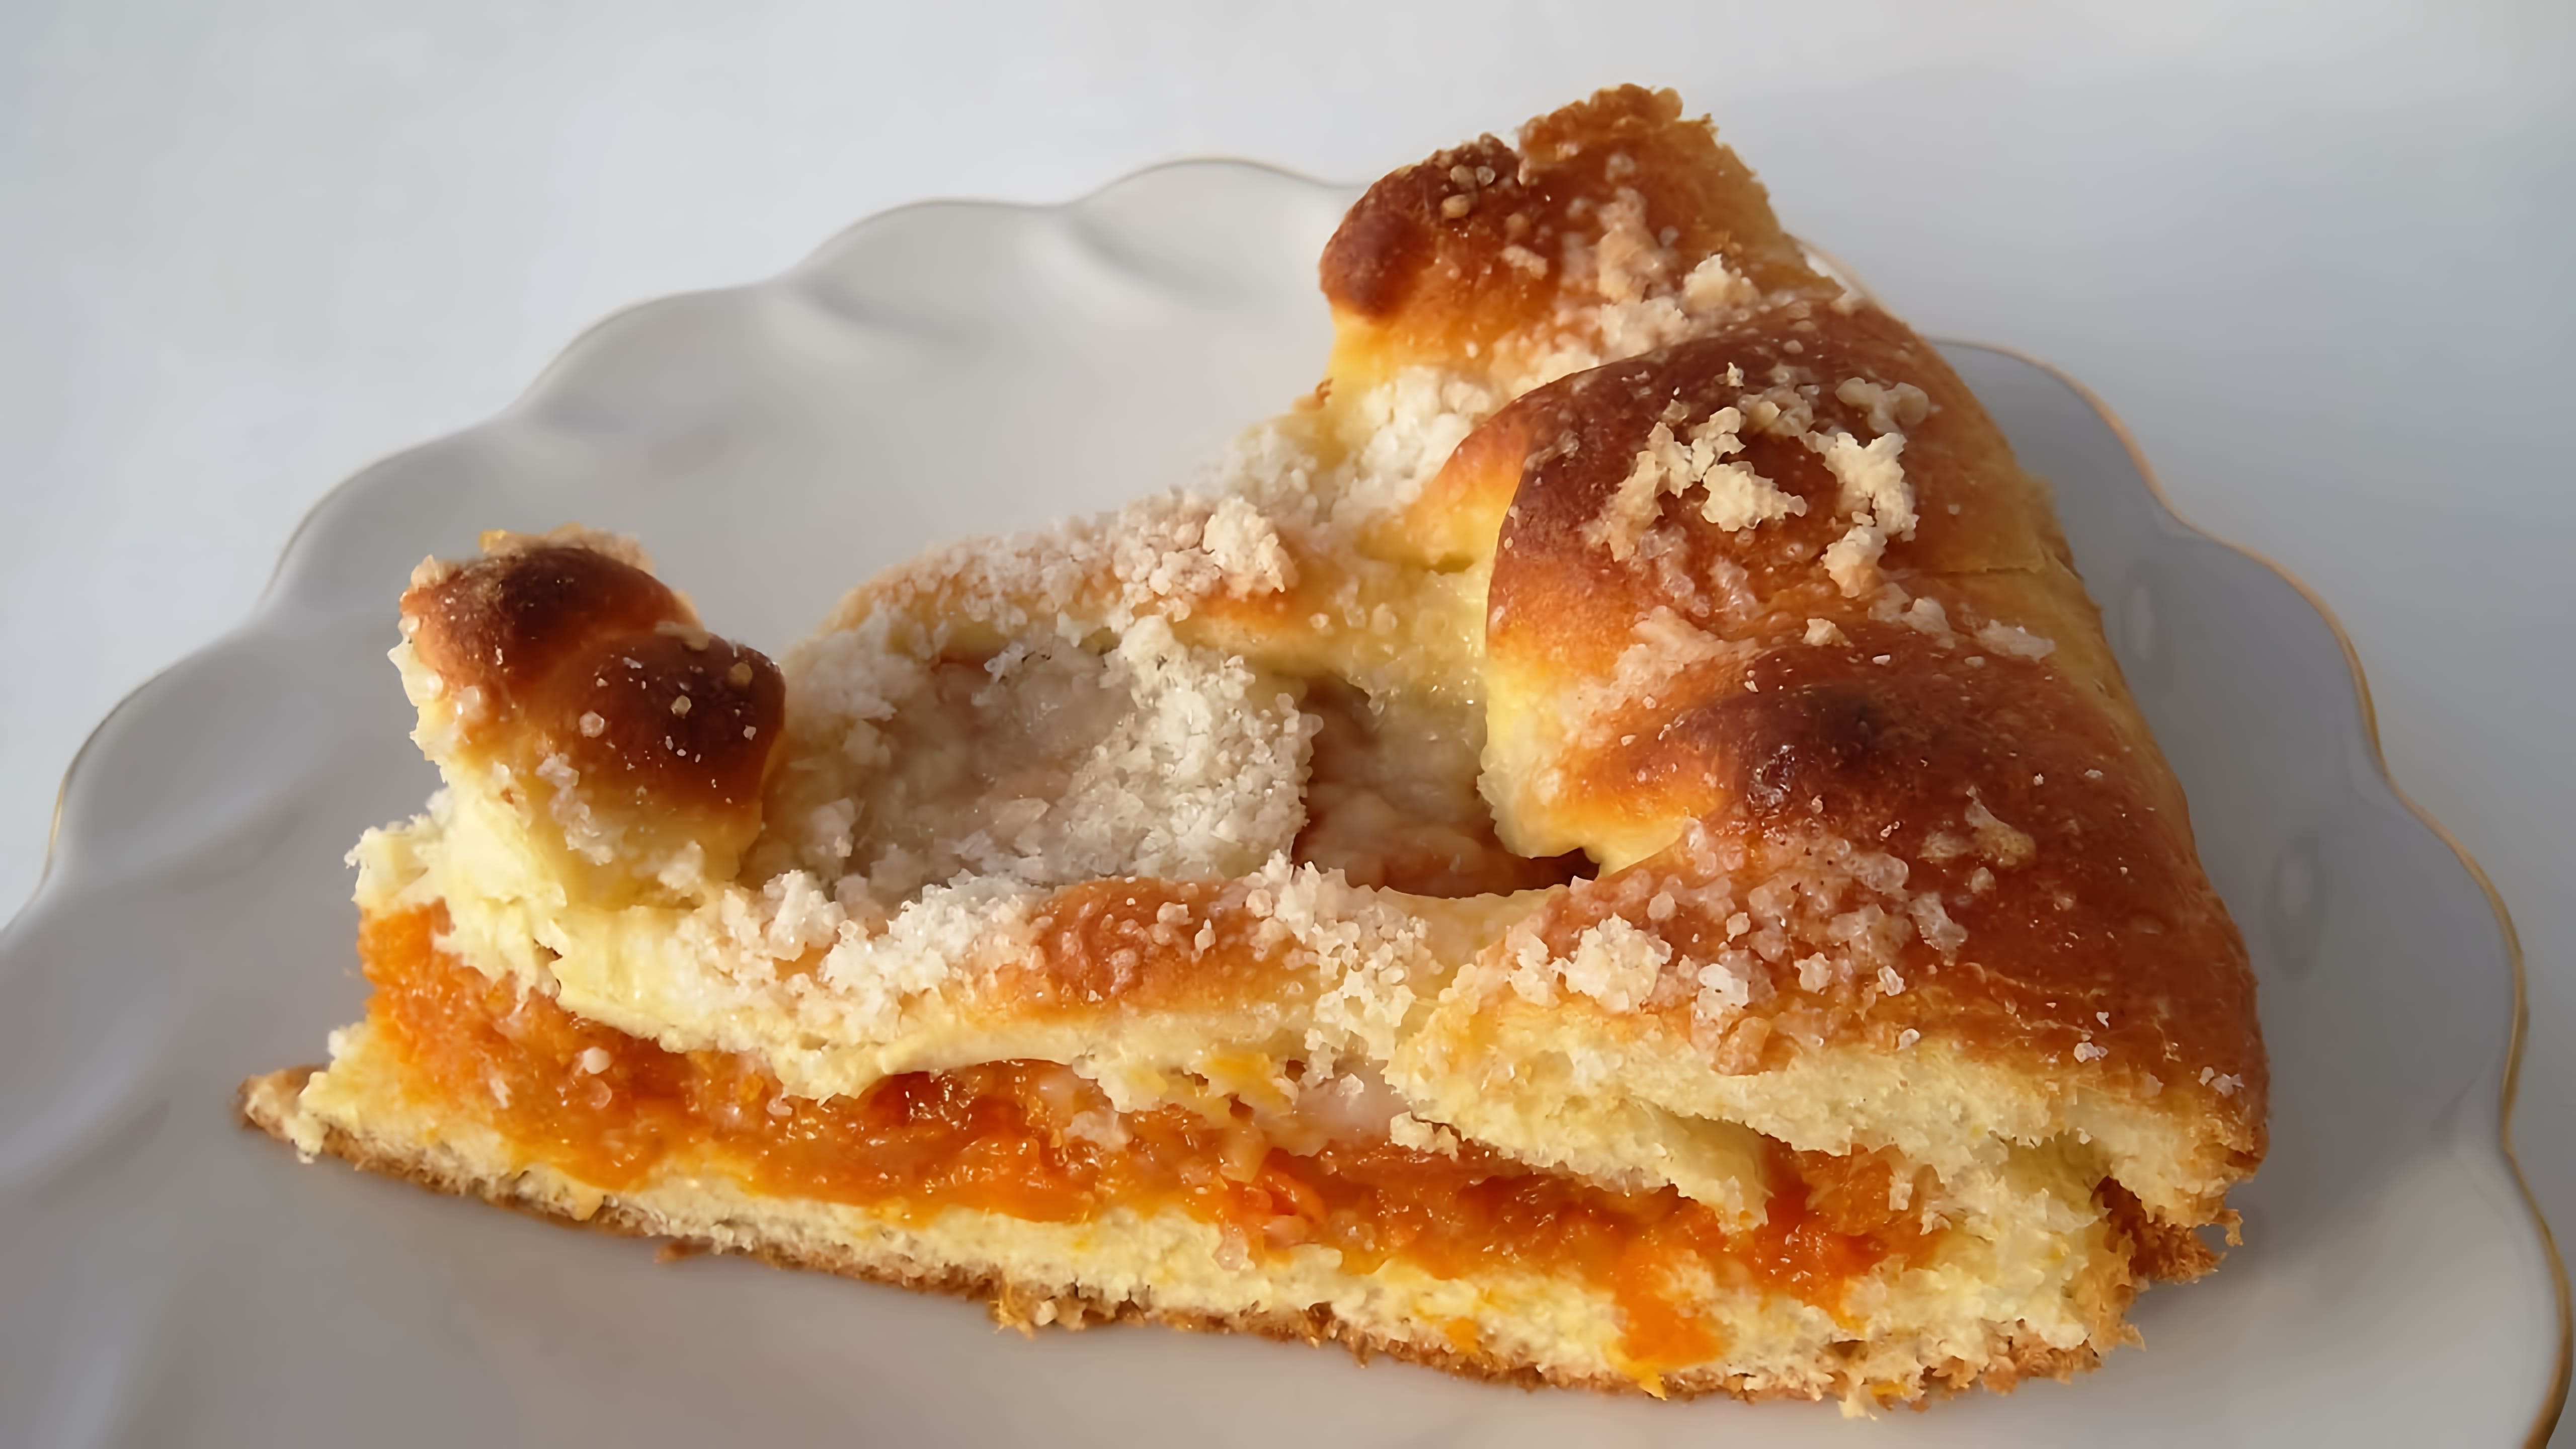 В этом видео демонстрируется рецепт татарского пирога с курагой